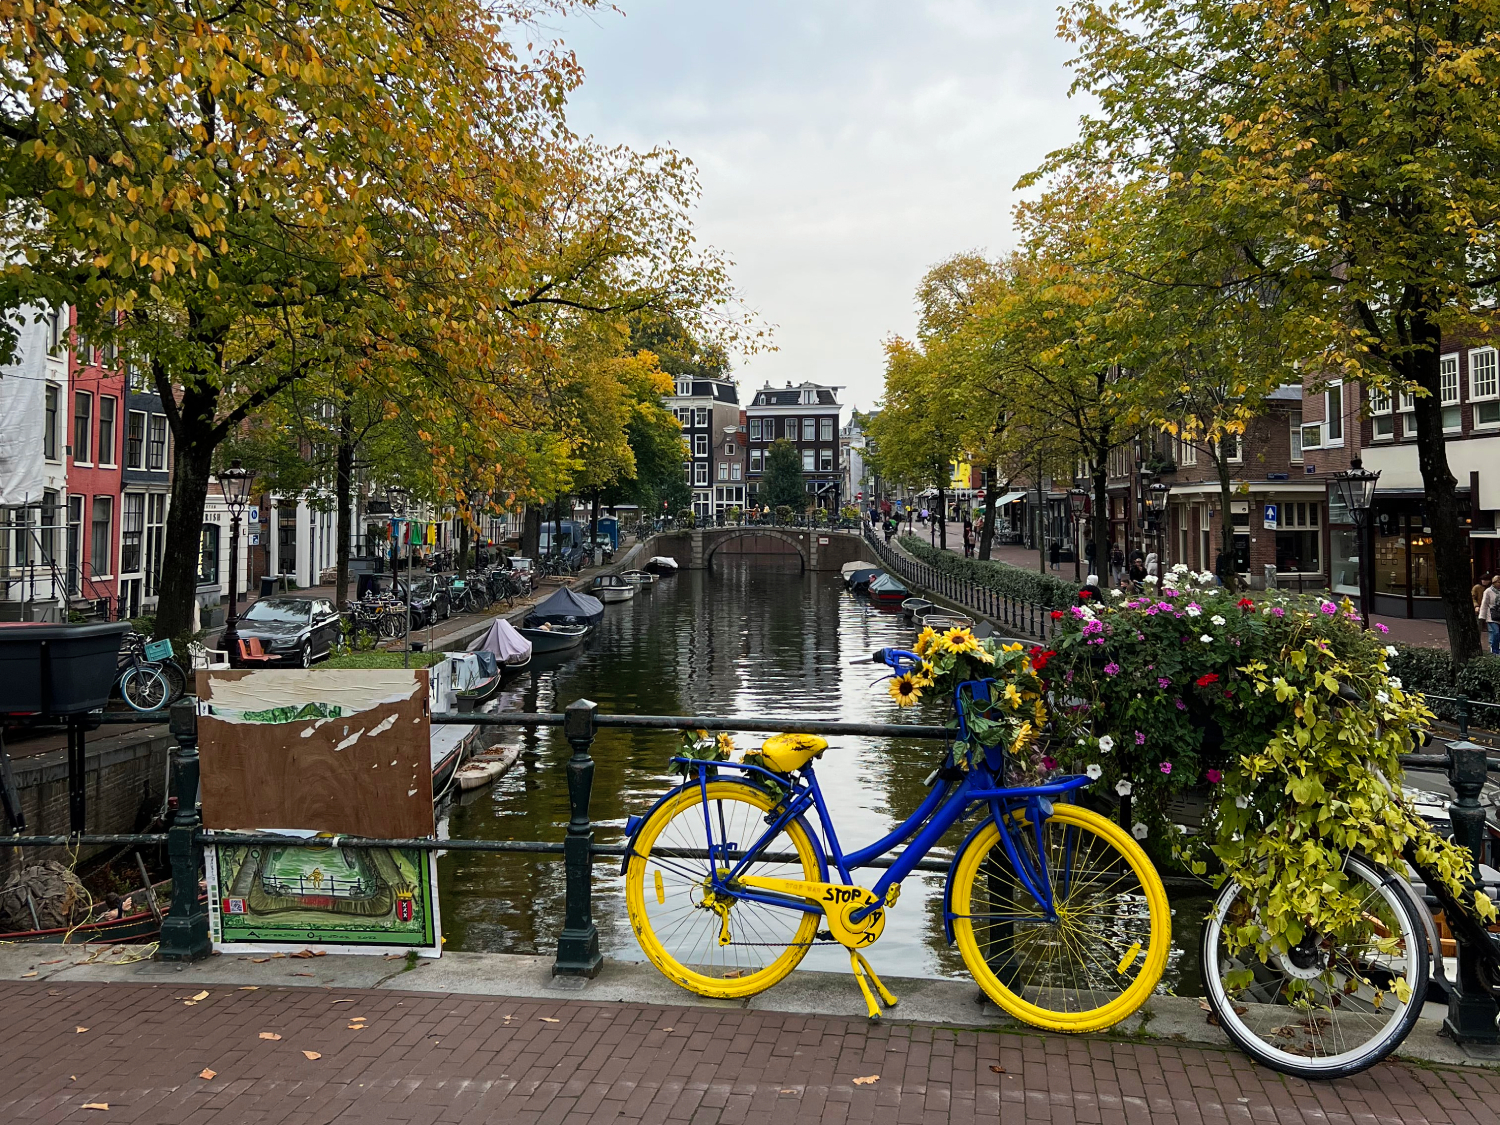 Lijnbaansgracht Canal, Amsterdam